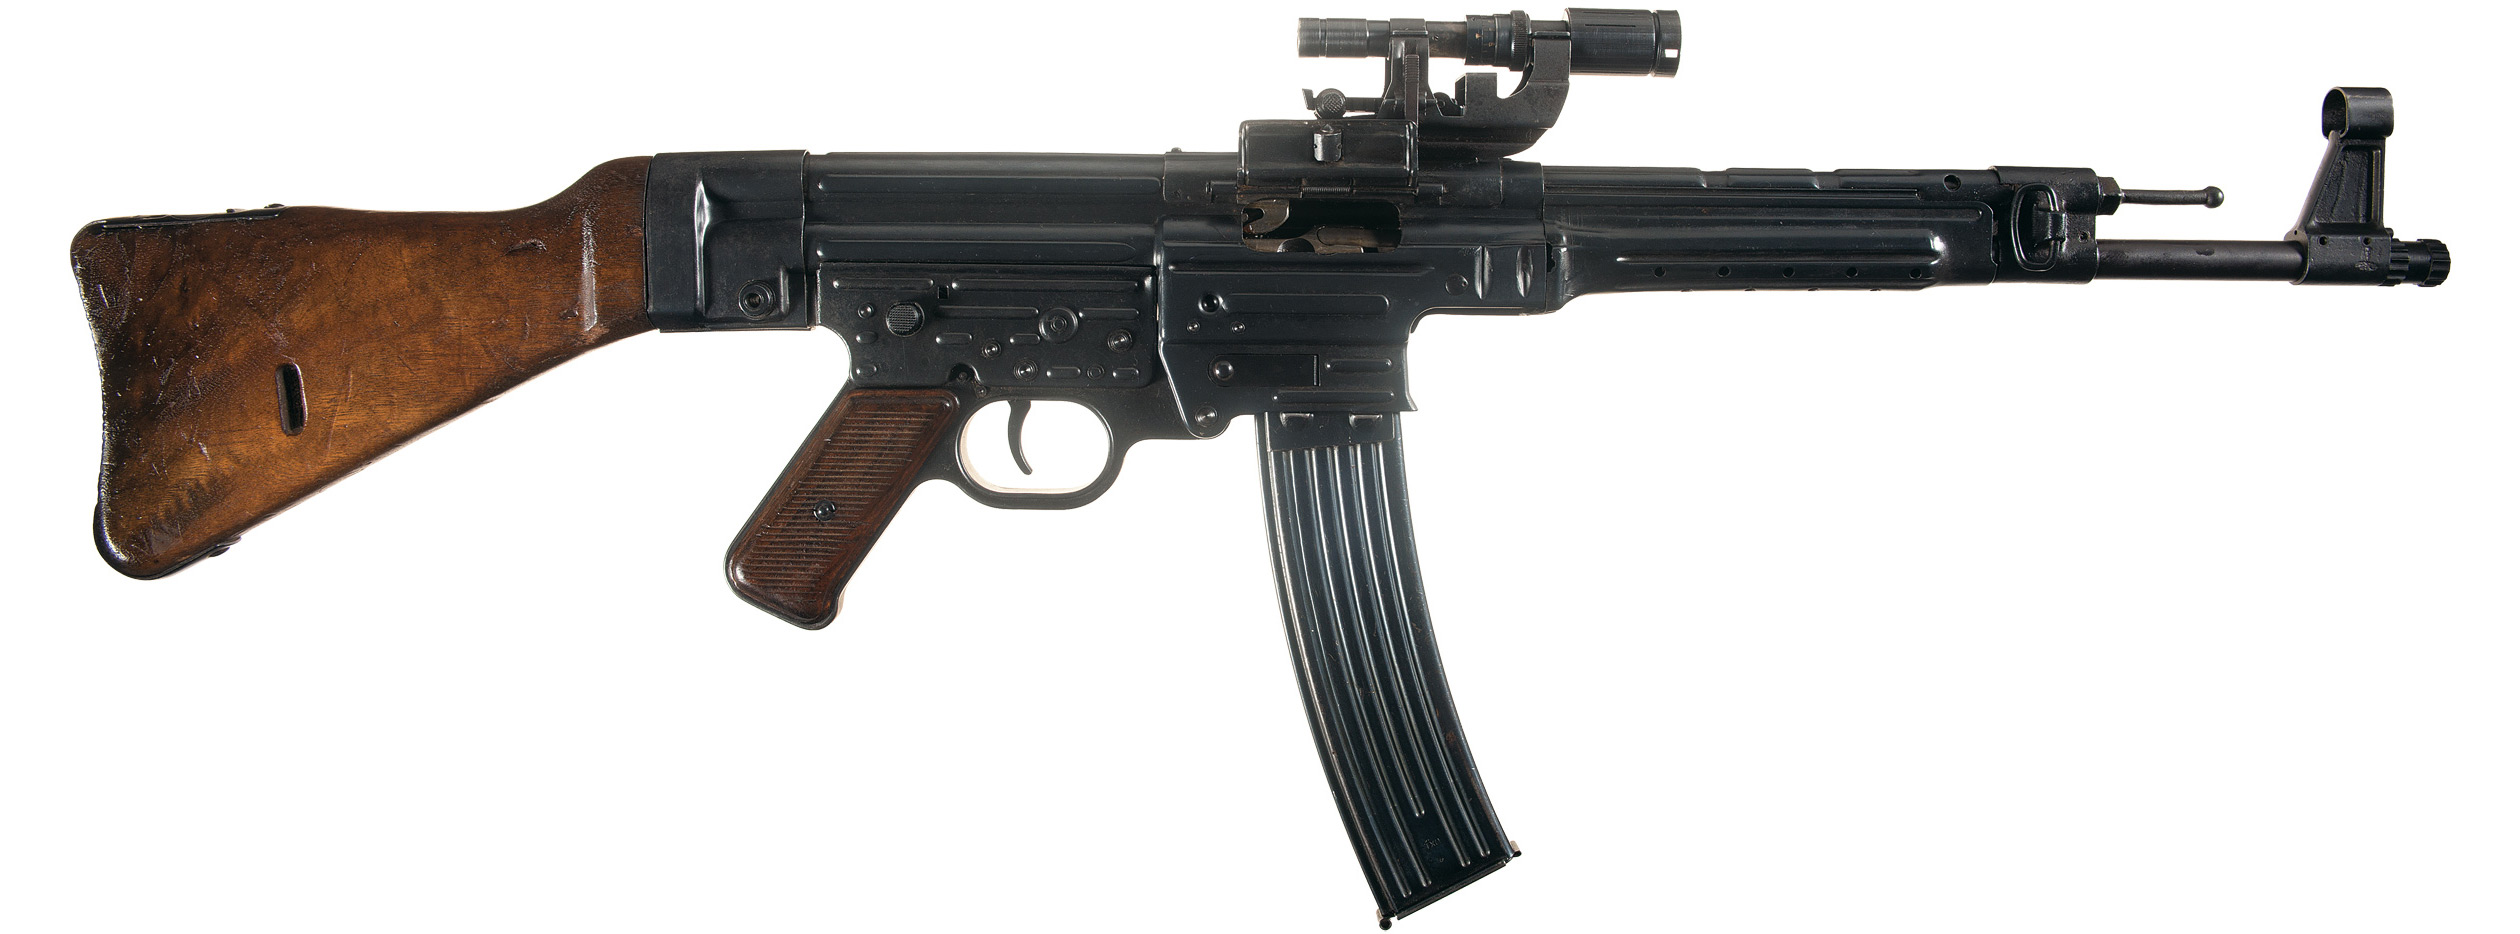 Немецкая штурмовая винтовка stg 44 фото